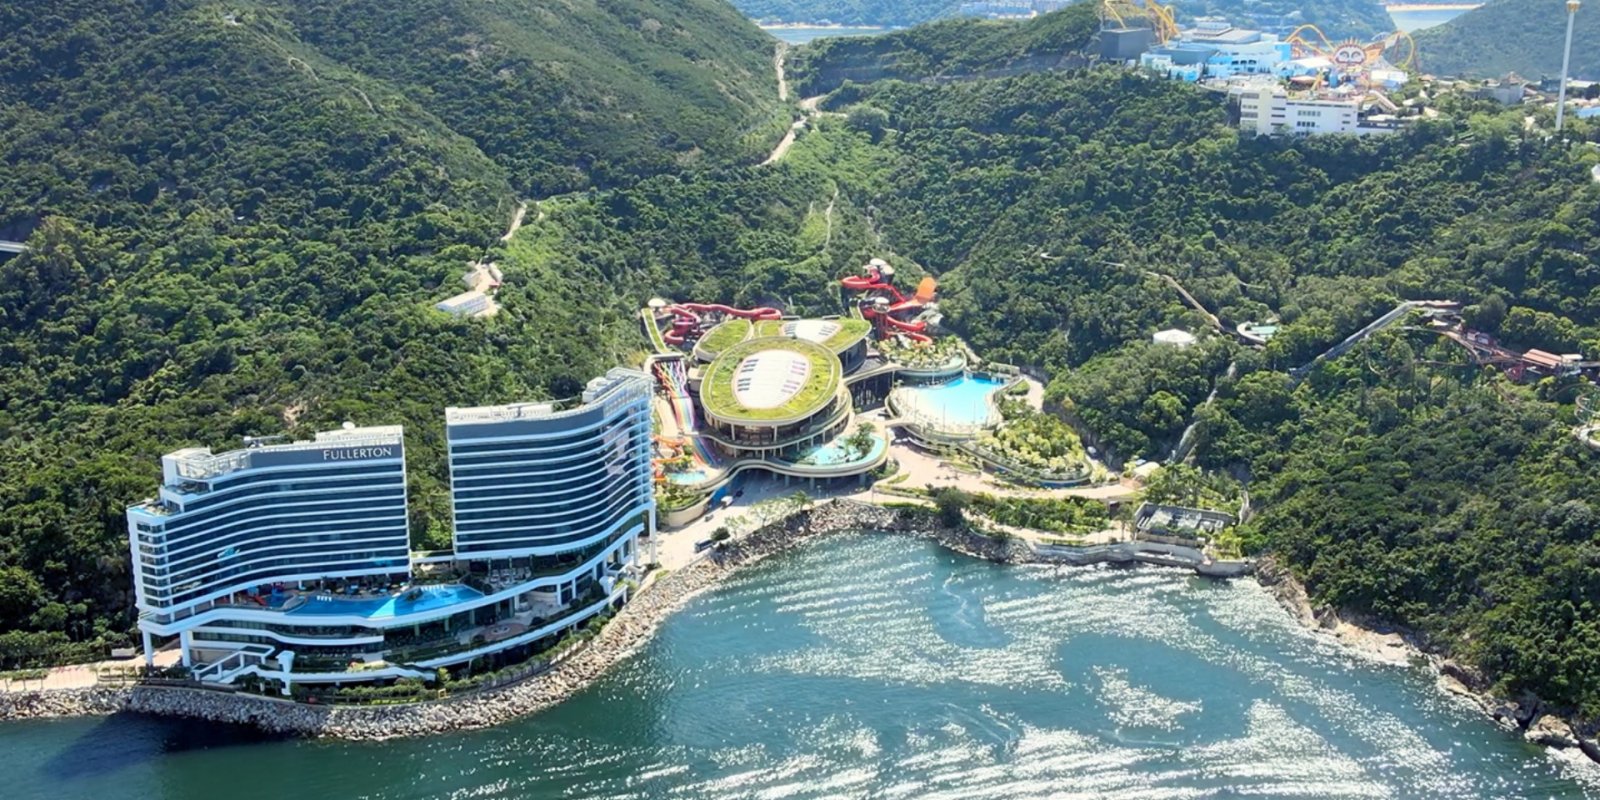 海洋公園訪客渡輪周六啟航　經由鴨脷洲往返香港仔及水上樂園